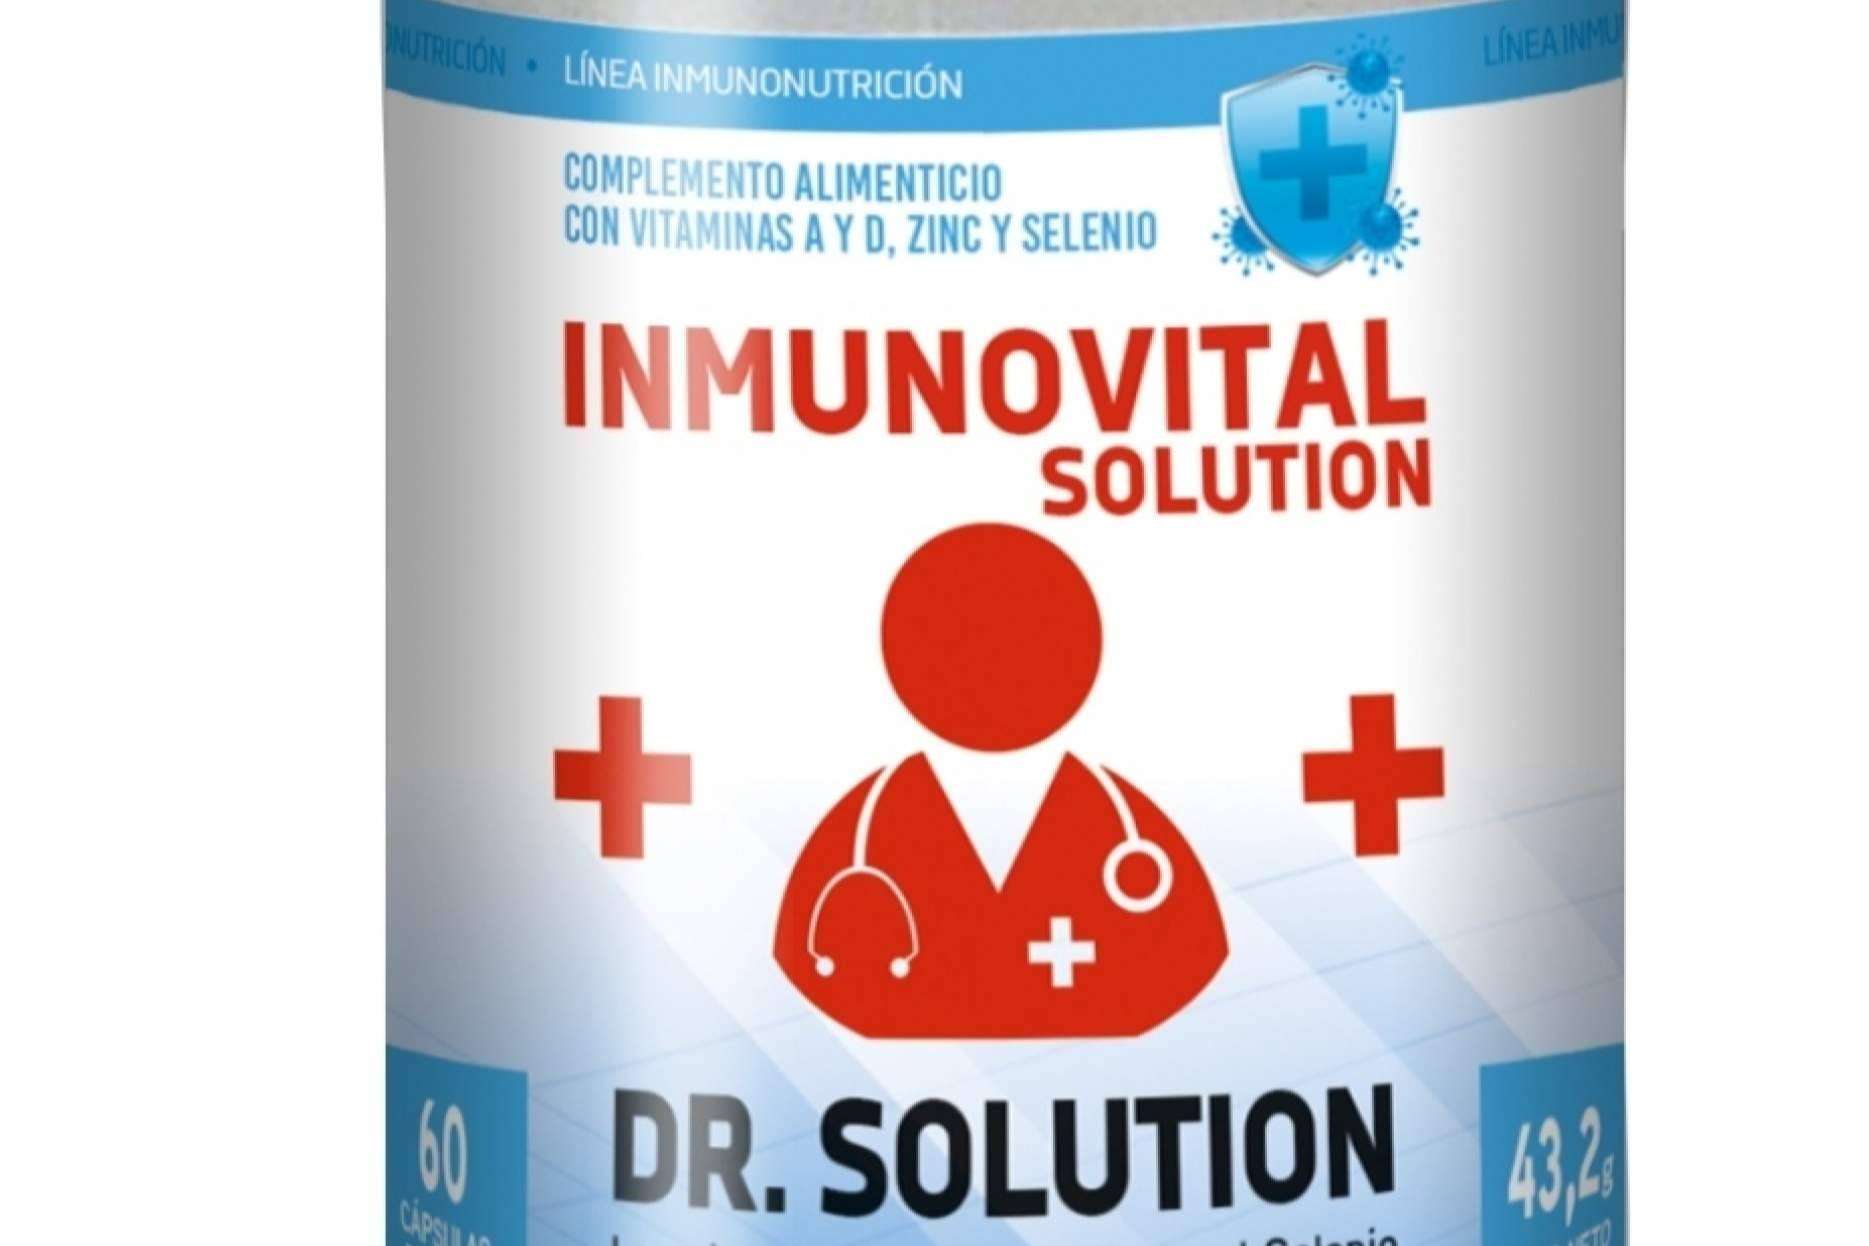 Inmunovital Solution, una visión inmunocéntrica en lugar de patogenocéntrica será la respuesta a futuras pandemias